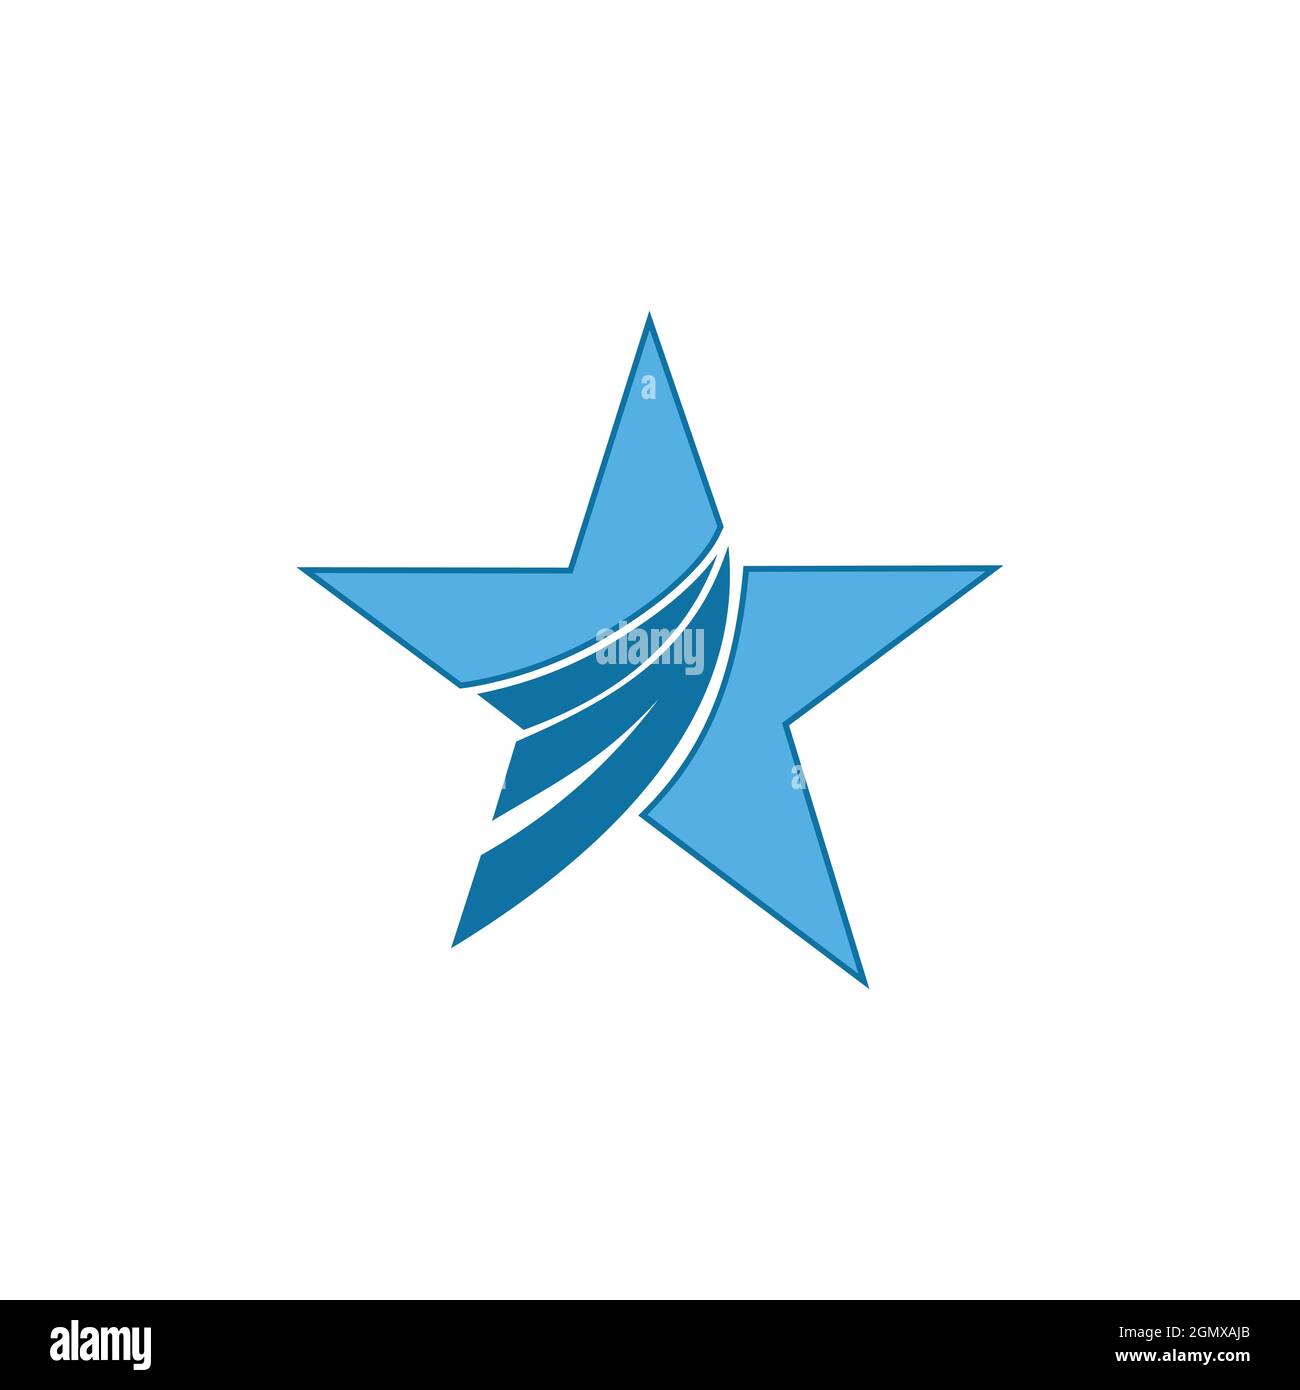 design graphique vectoriel plat avec logo étoile bleu élégant Illustration de Vecteur